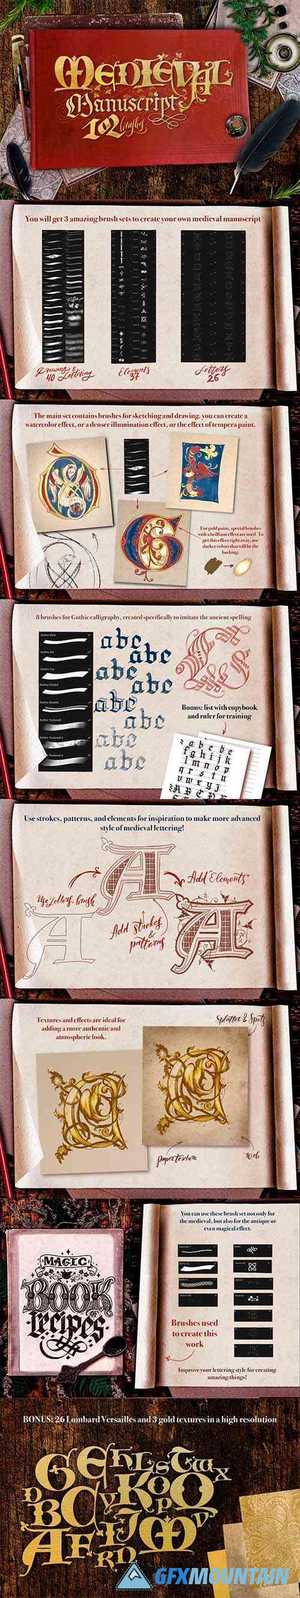 Medieval Manuscript Creator Kit 4674206